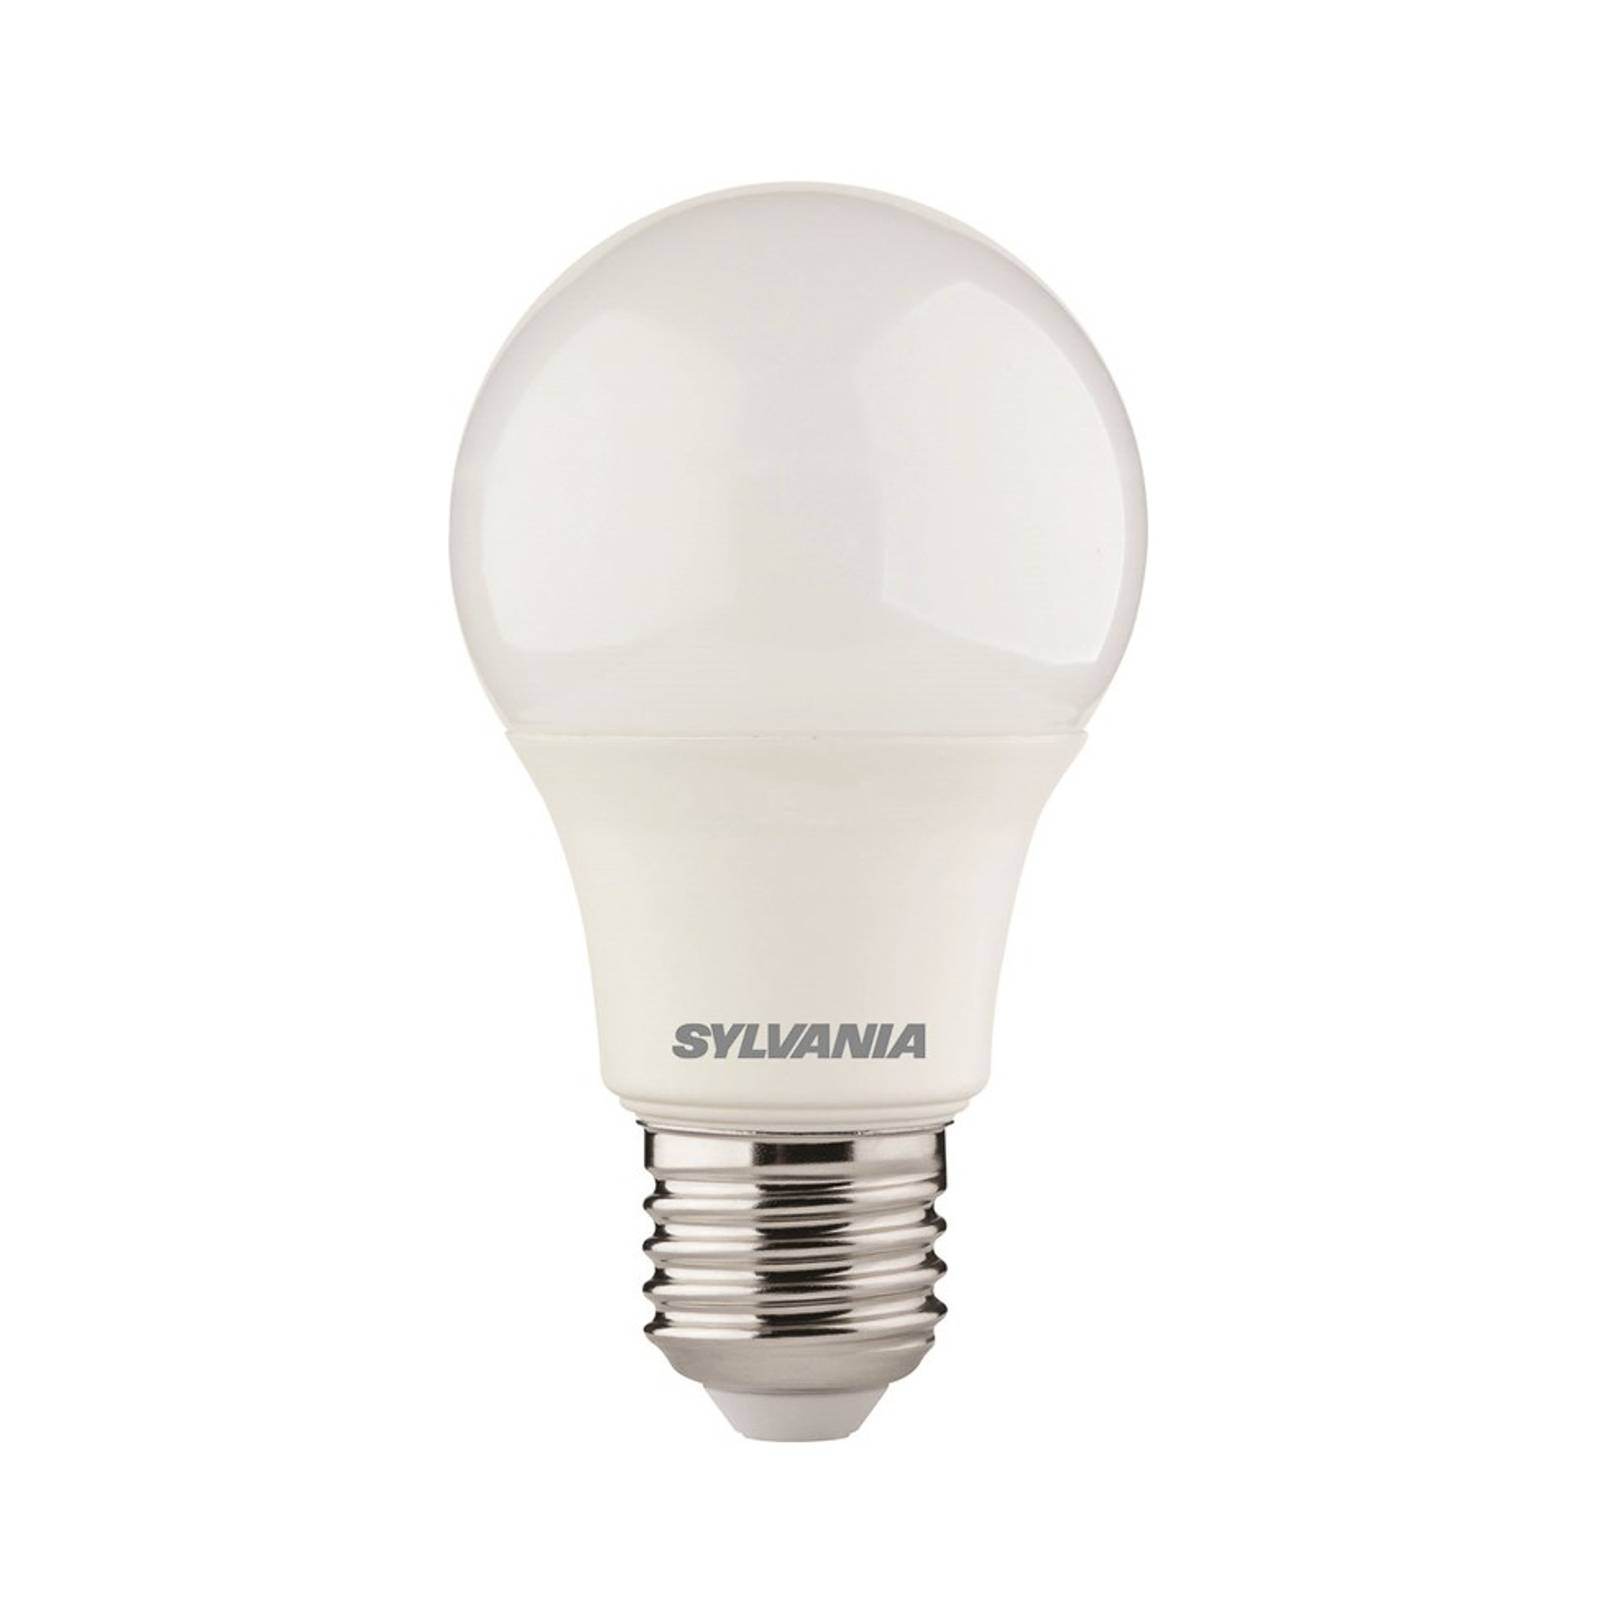 LED žiarovka E27 ToLEDo A60 8W teplá biela